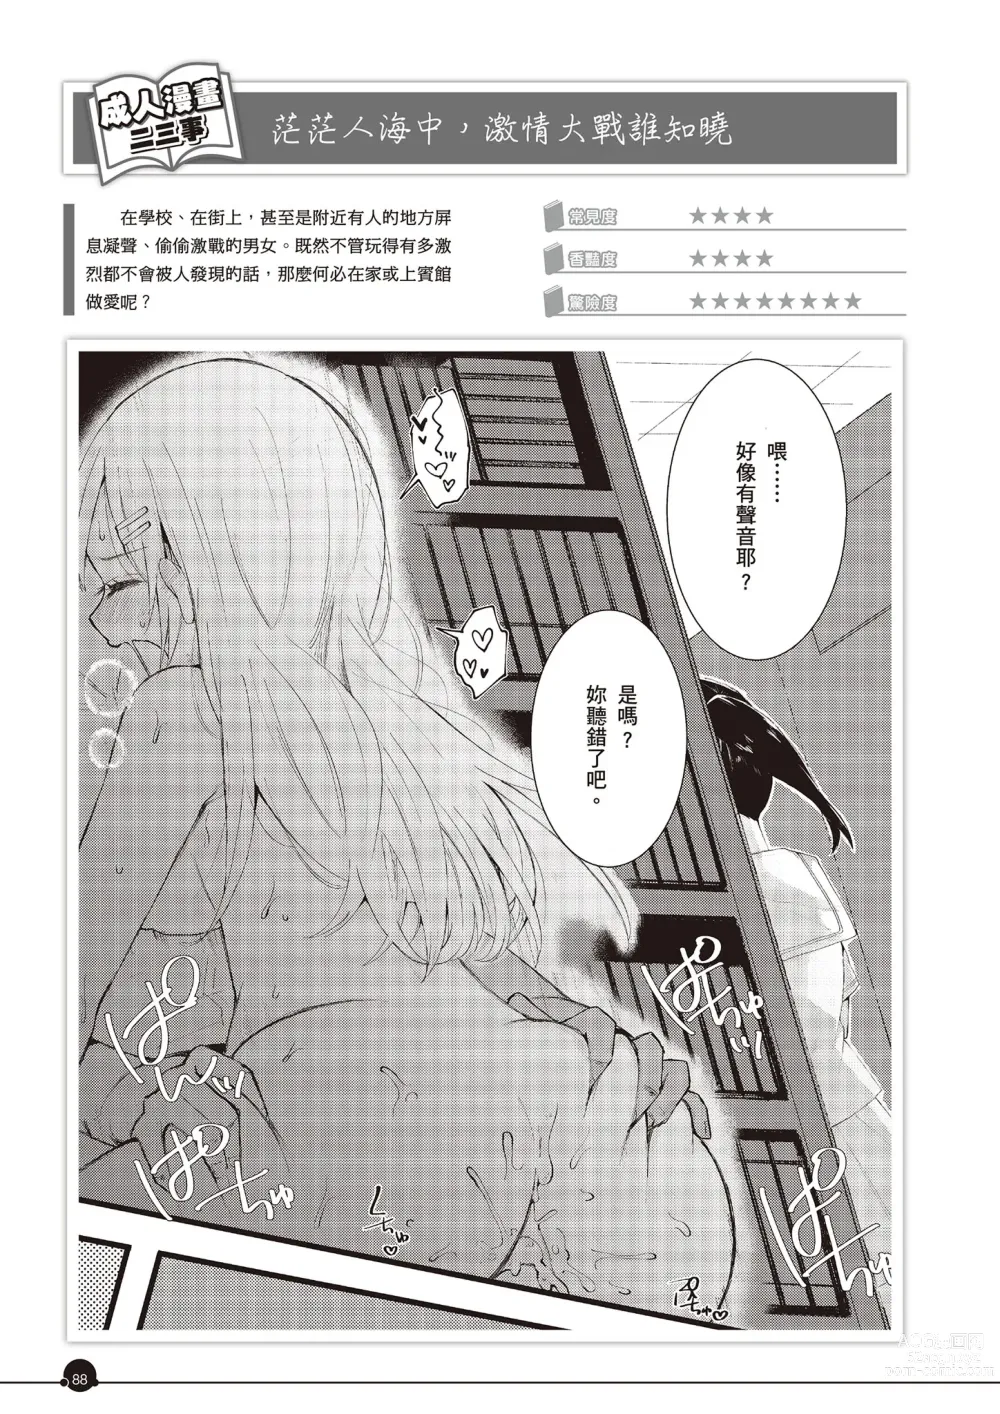 Page 89 of manga 完全實用版 成人漫畫沒告訴你的性愛真相